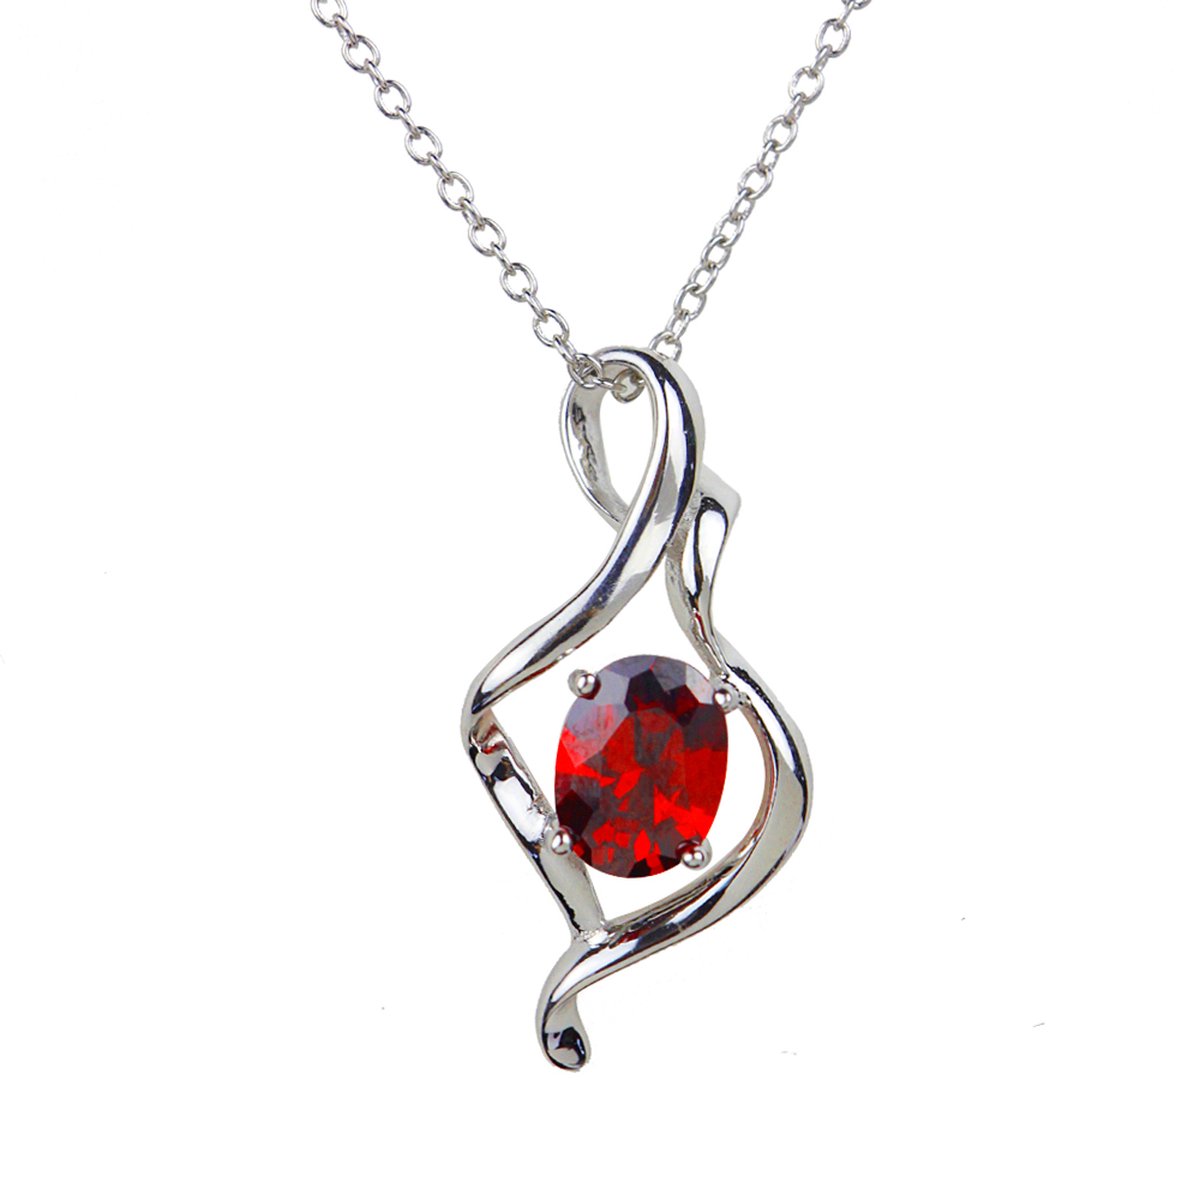 Doree halsketting voor dames - ontwerp - S925 witgoud - kristallen edelsteen - Valentijnsdagcadeau